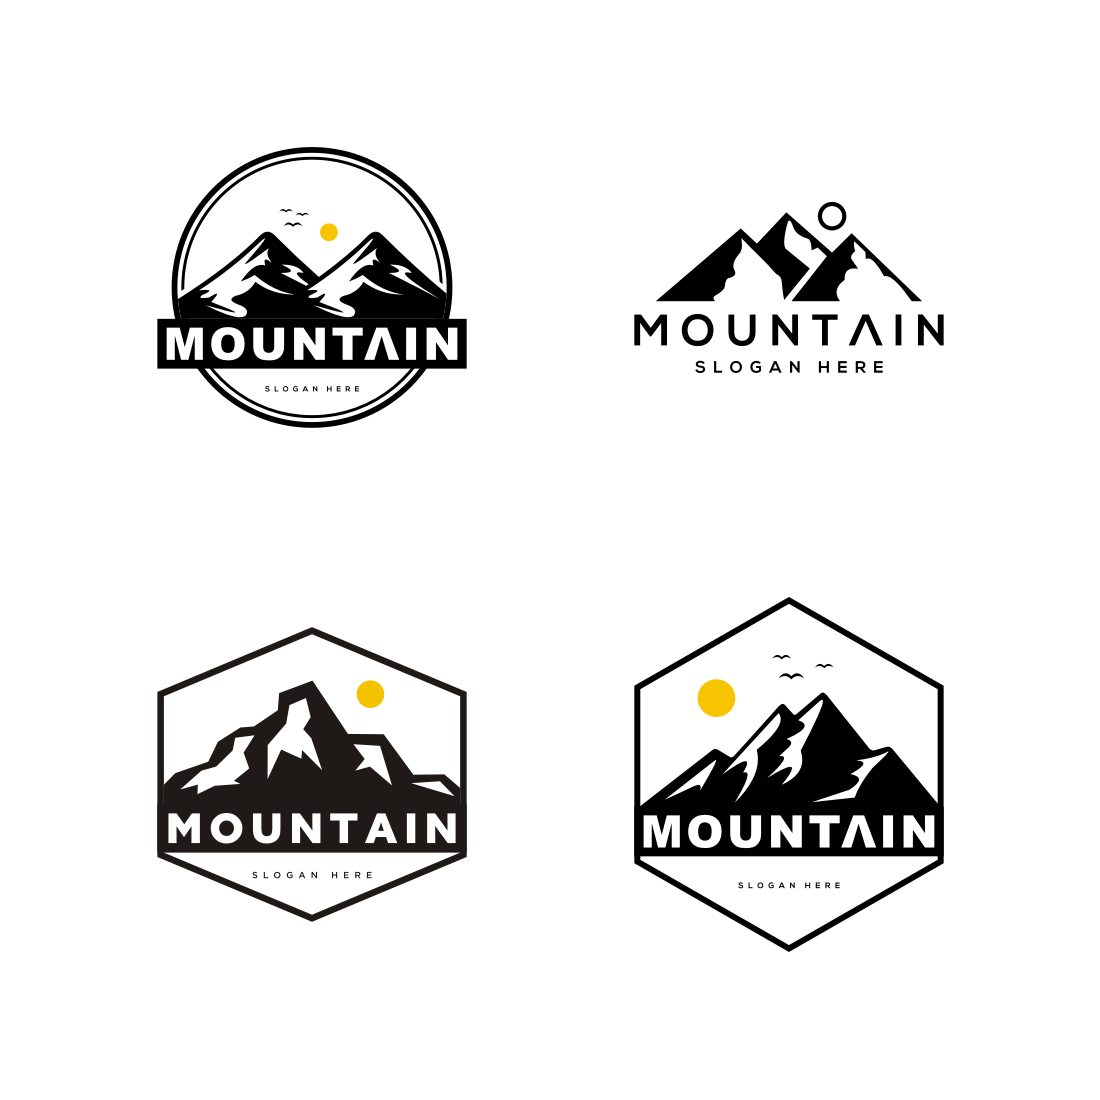 Set of Mountain Logo Vector main cover image.